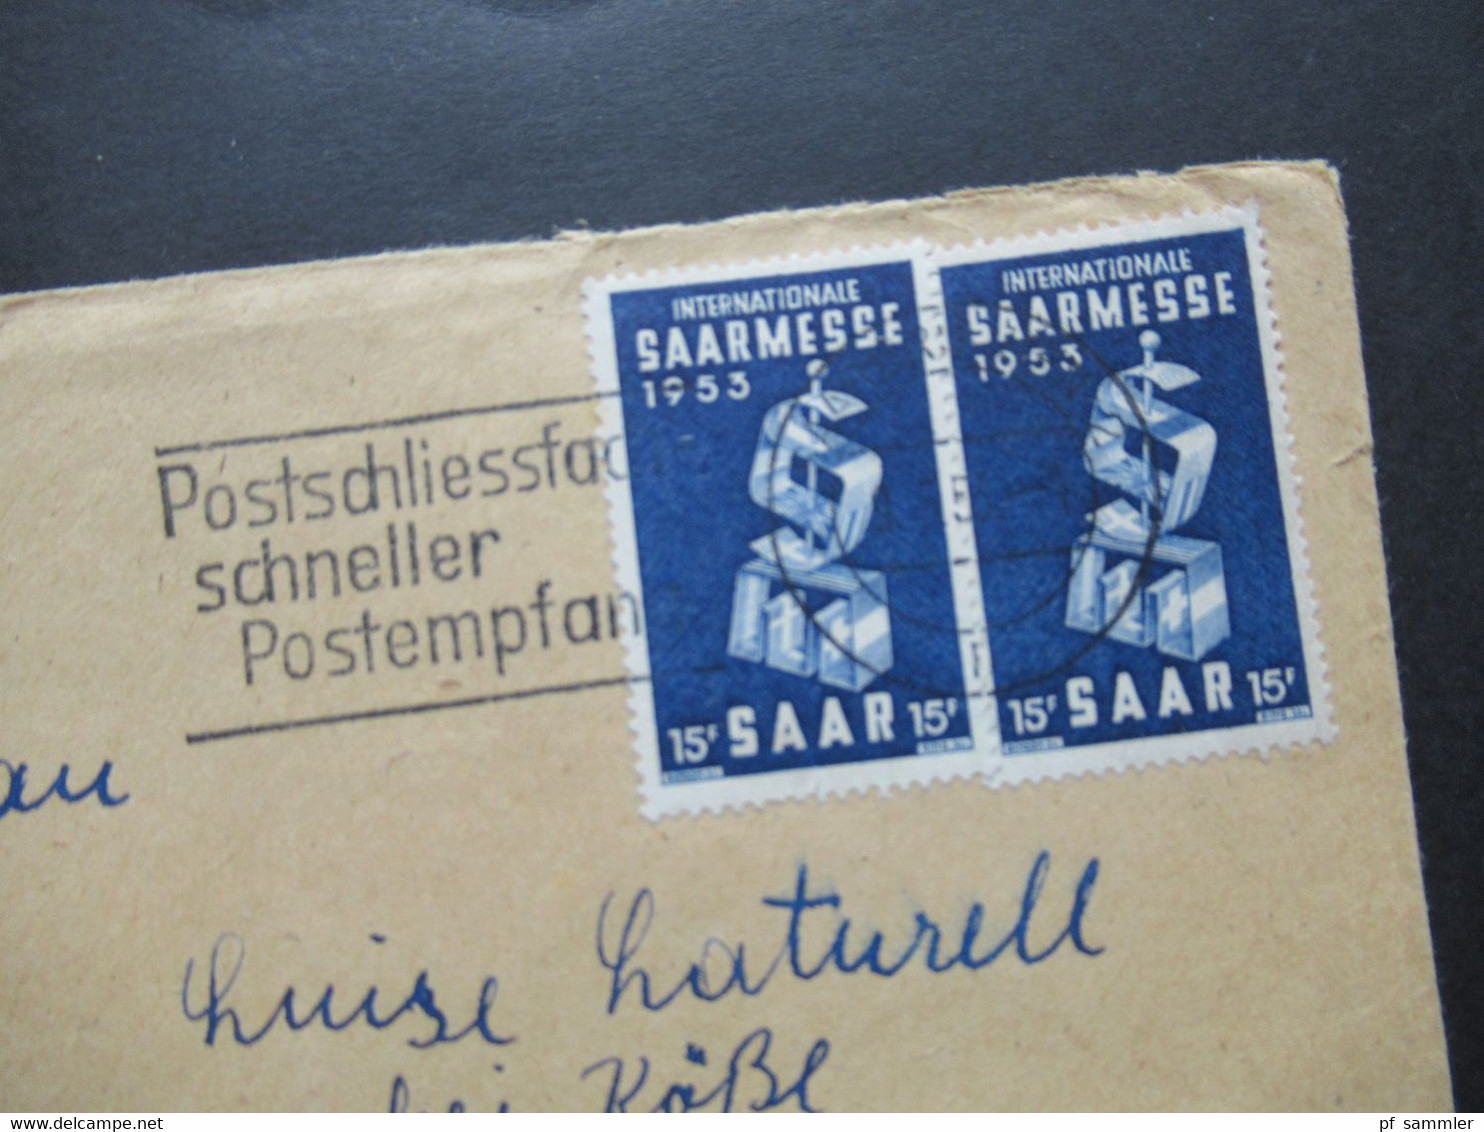 Saarland 1953 Nr.341 (2) MeF Internationale Saarmesse Werbestempel Postschliessfach Schneller Postempfang - Covers & Documents